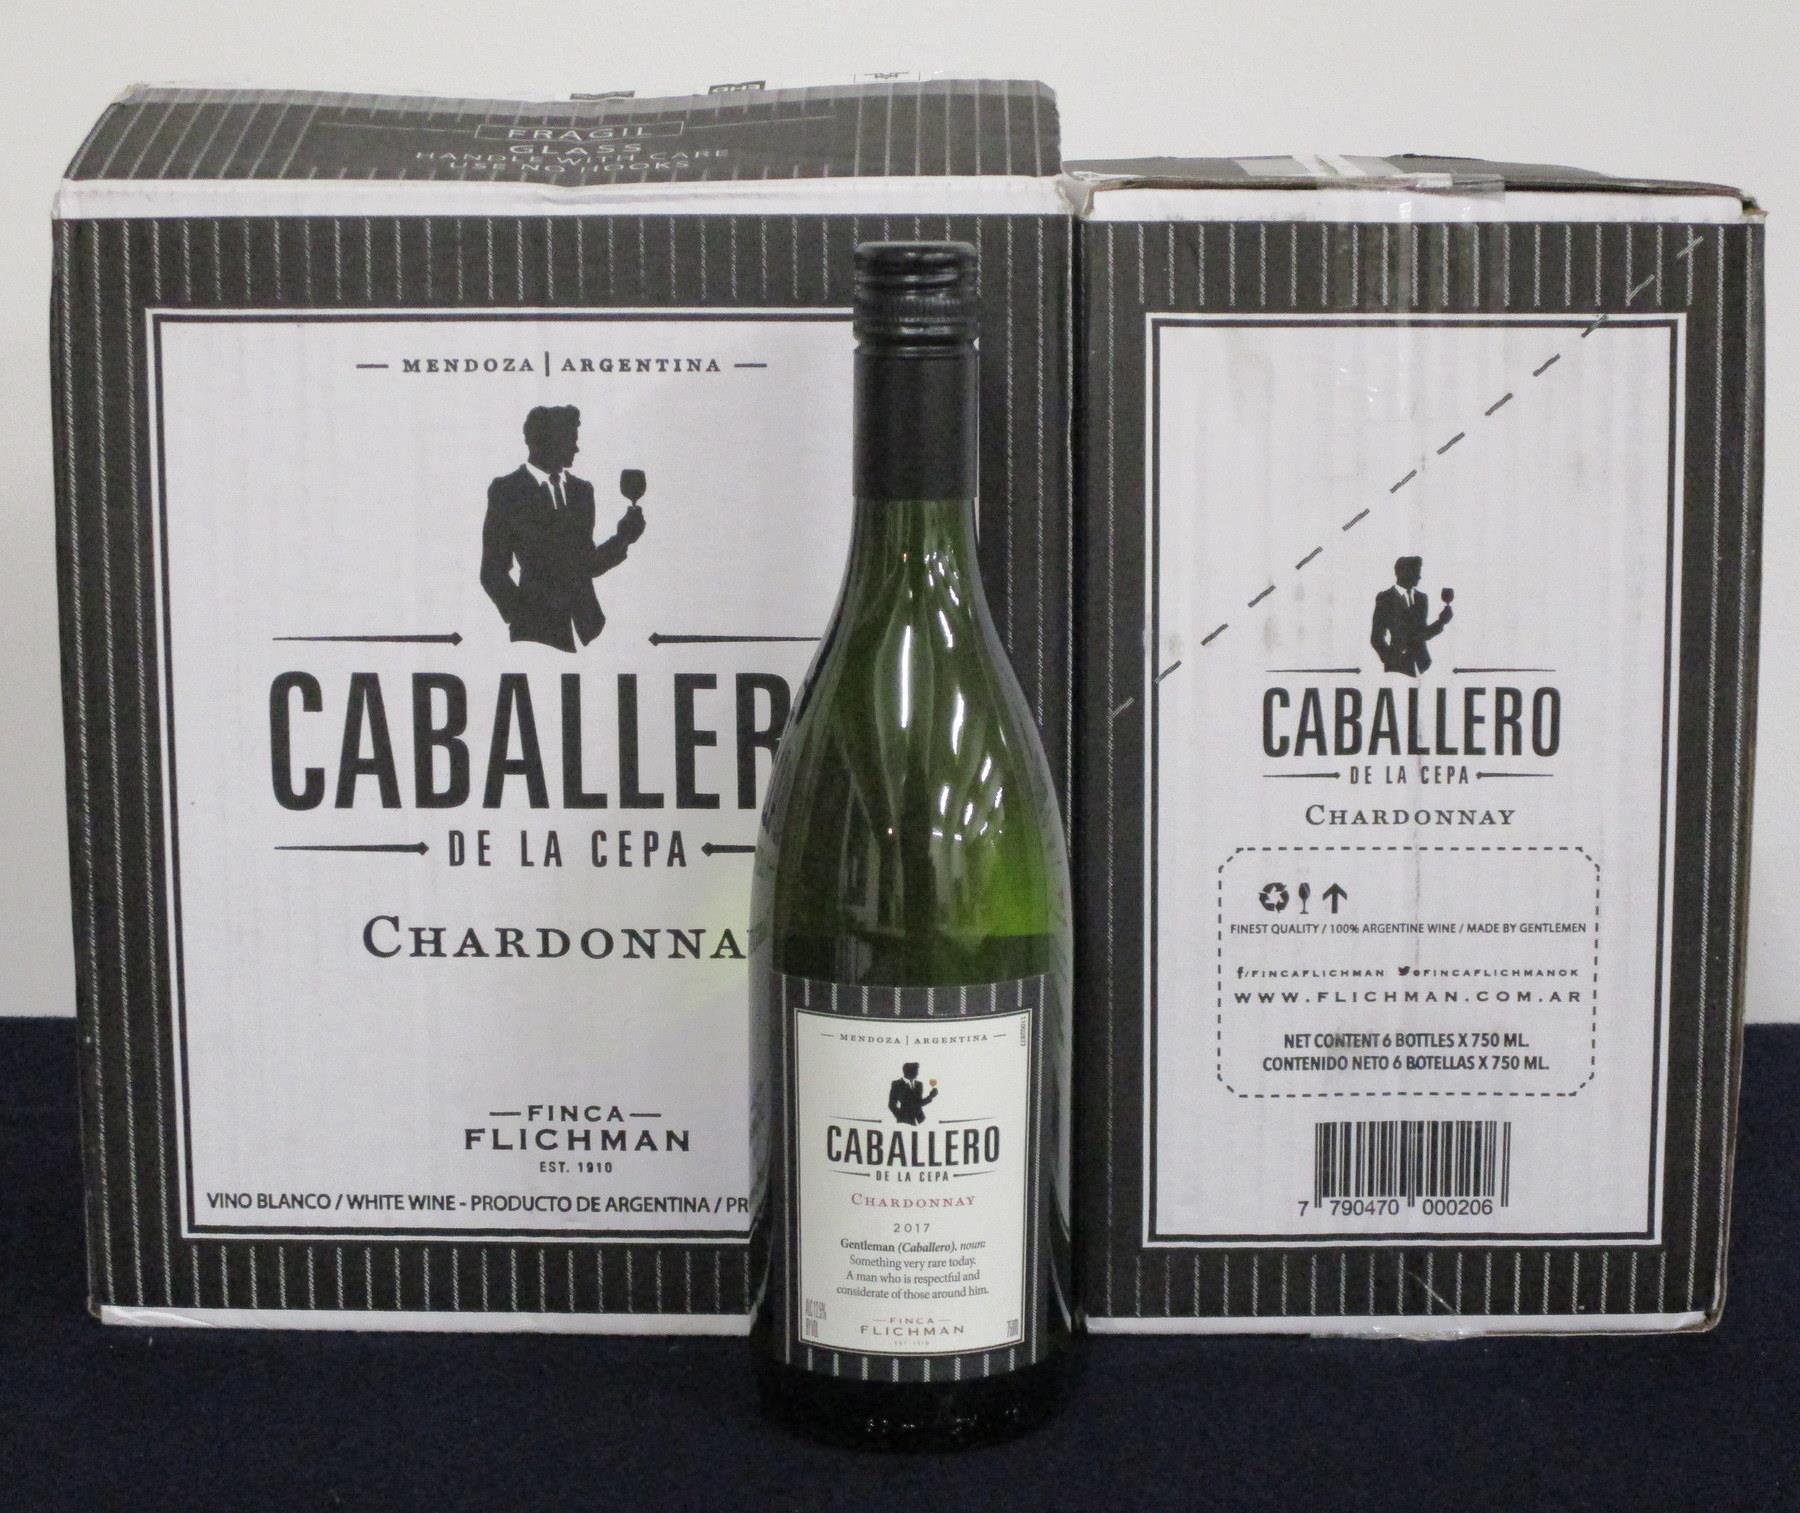 V 12 bts Caballero de La Cepa Chardonnay 2017 oc (2 x 6) Mendoza